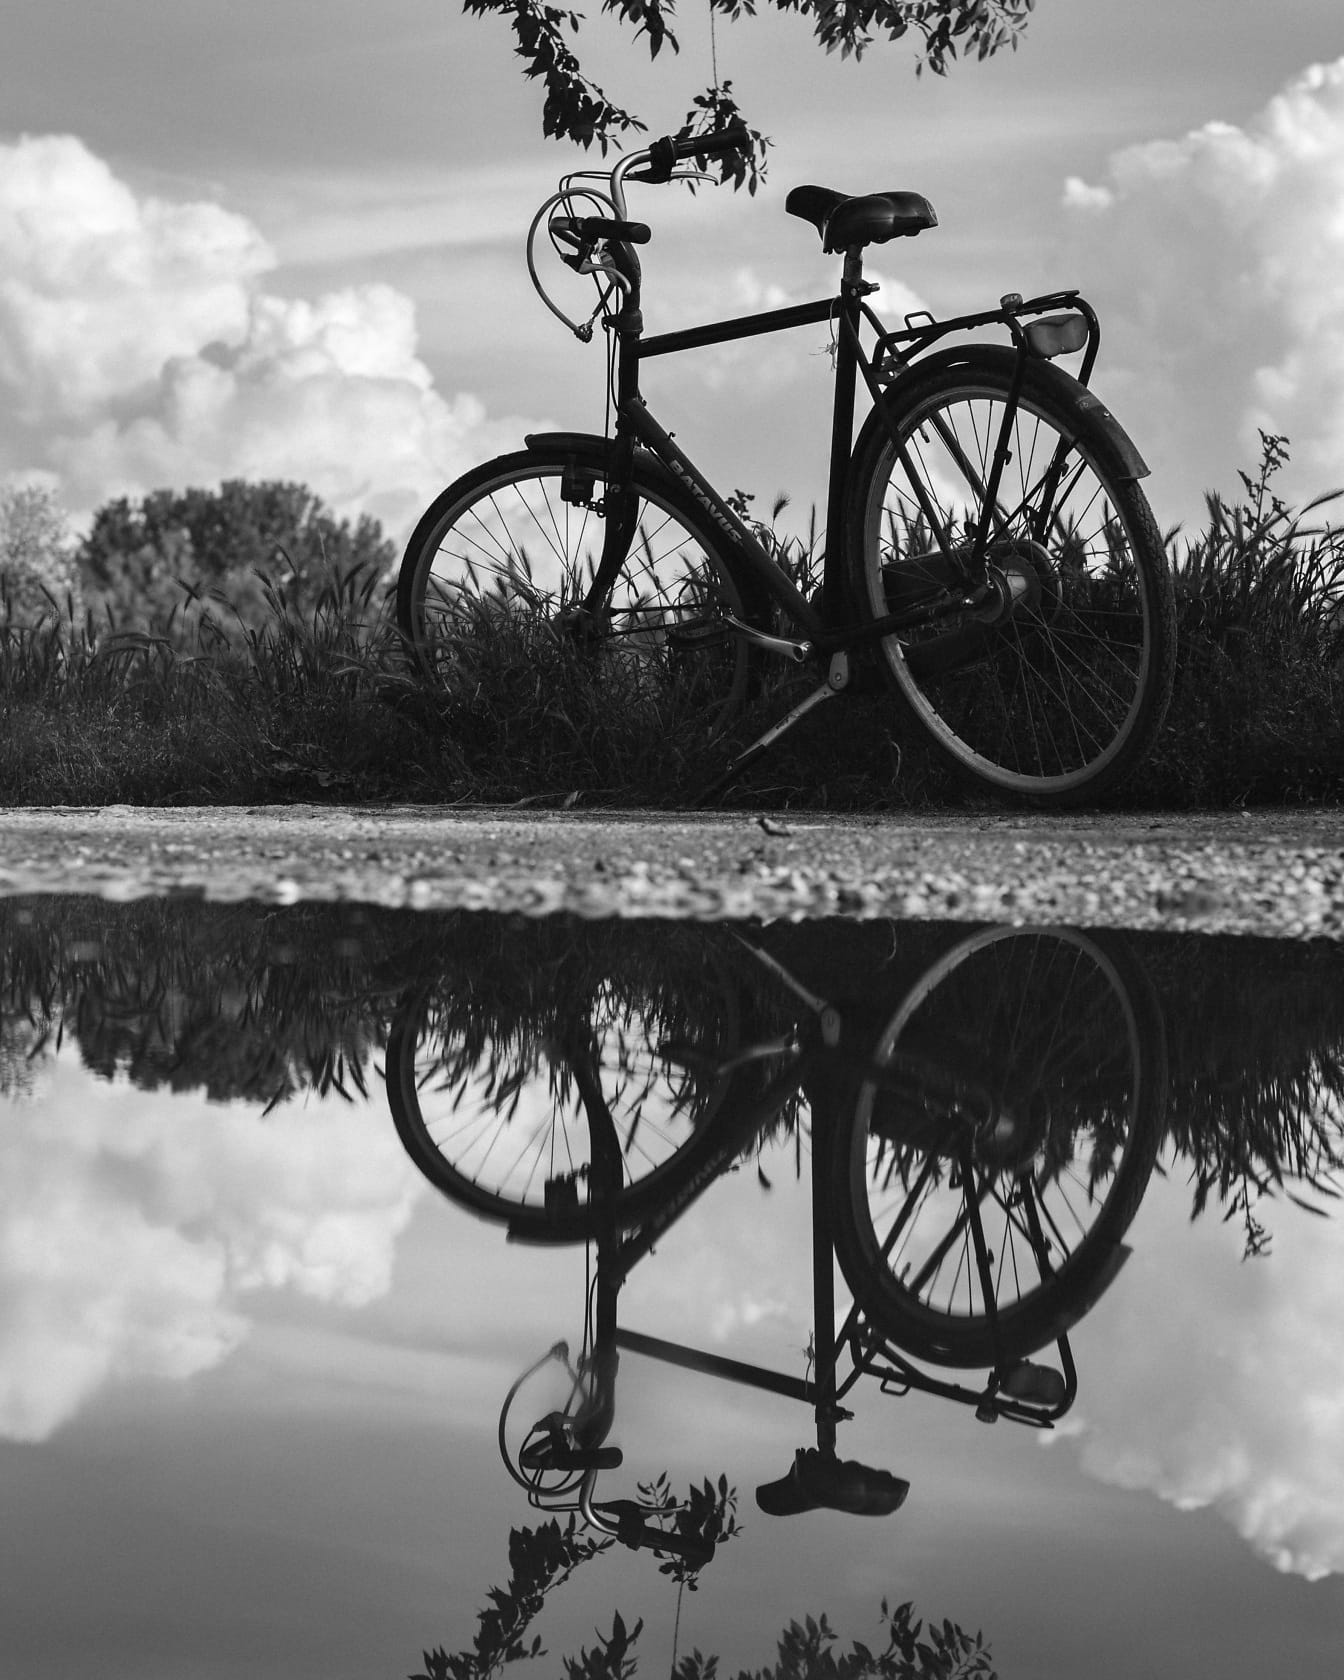 水面に映る田舎道の自転車のモノクロ写真